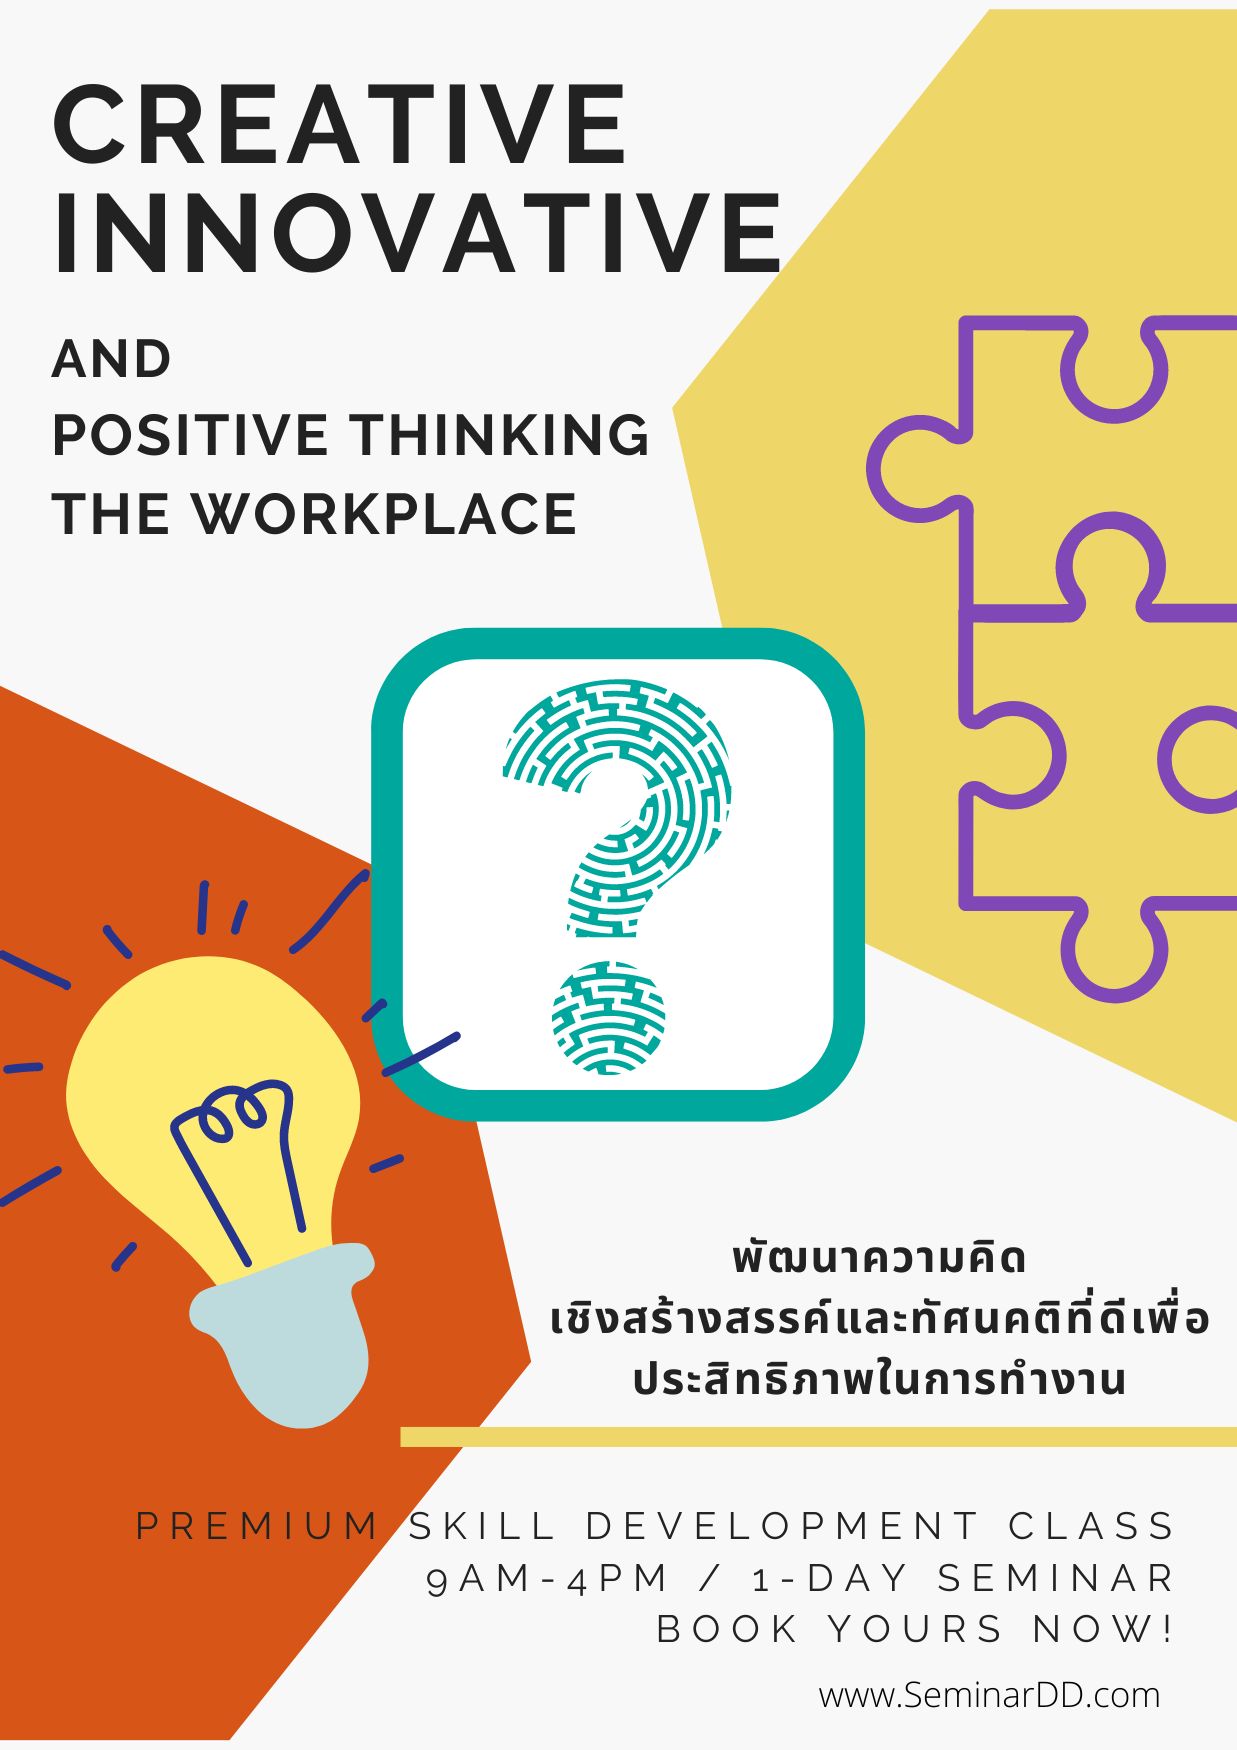 อบรมออนไลน์ผ่าน Zoom หลักสูตร หลักสูตร พัฒนาความคิดเชิงสร้างสรรค์ และทัศนคติที่ดีเพื่อประสิทธิภาพการทำงาน ( Creative Innovative and Positive Thinking in the Workplace ) - อบรมในรูปแบบ online ผ่าน zoom